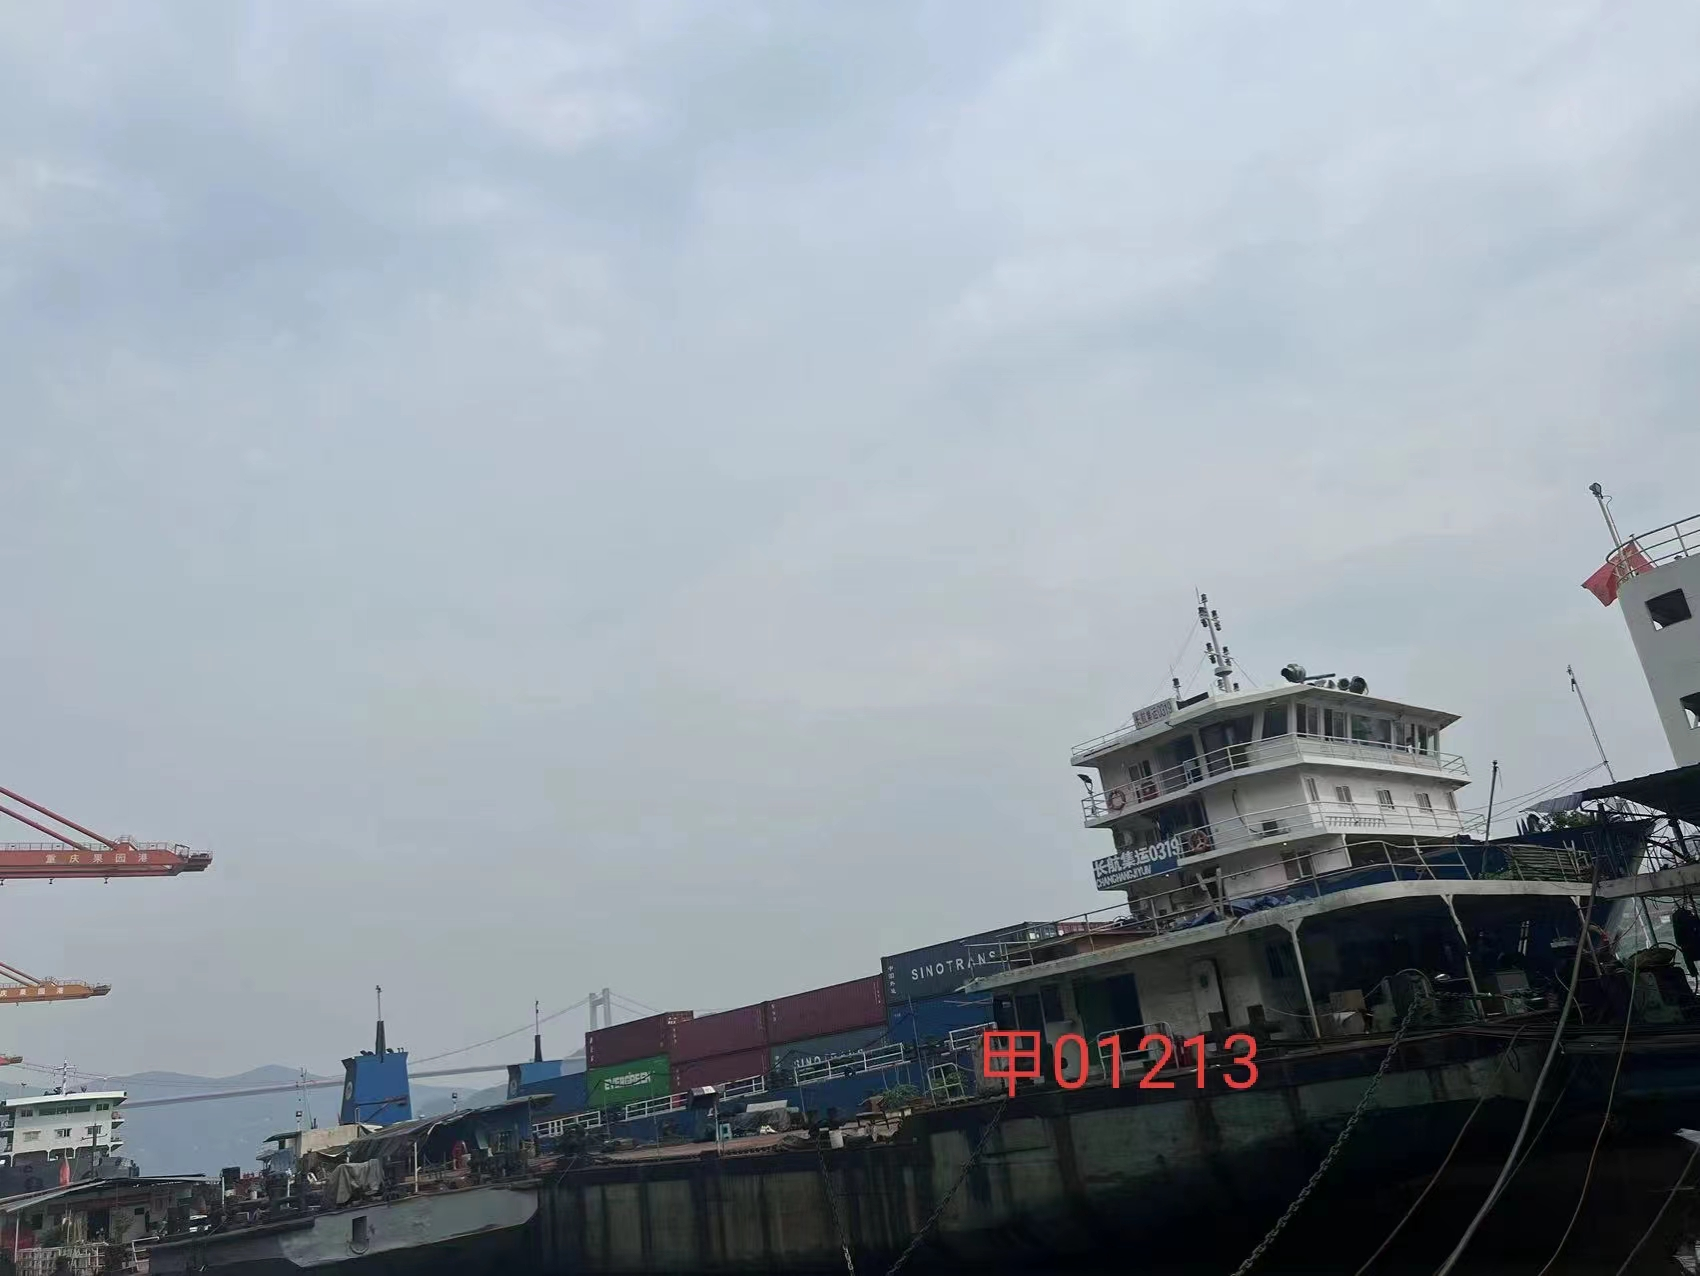 公司持有的报废“甲01213”船舶出售招标